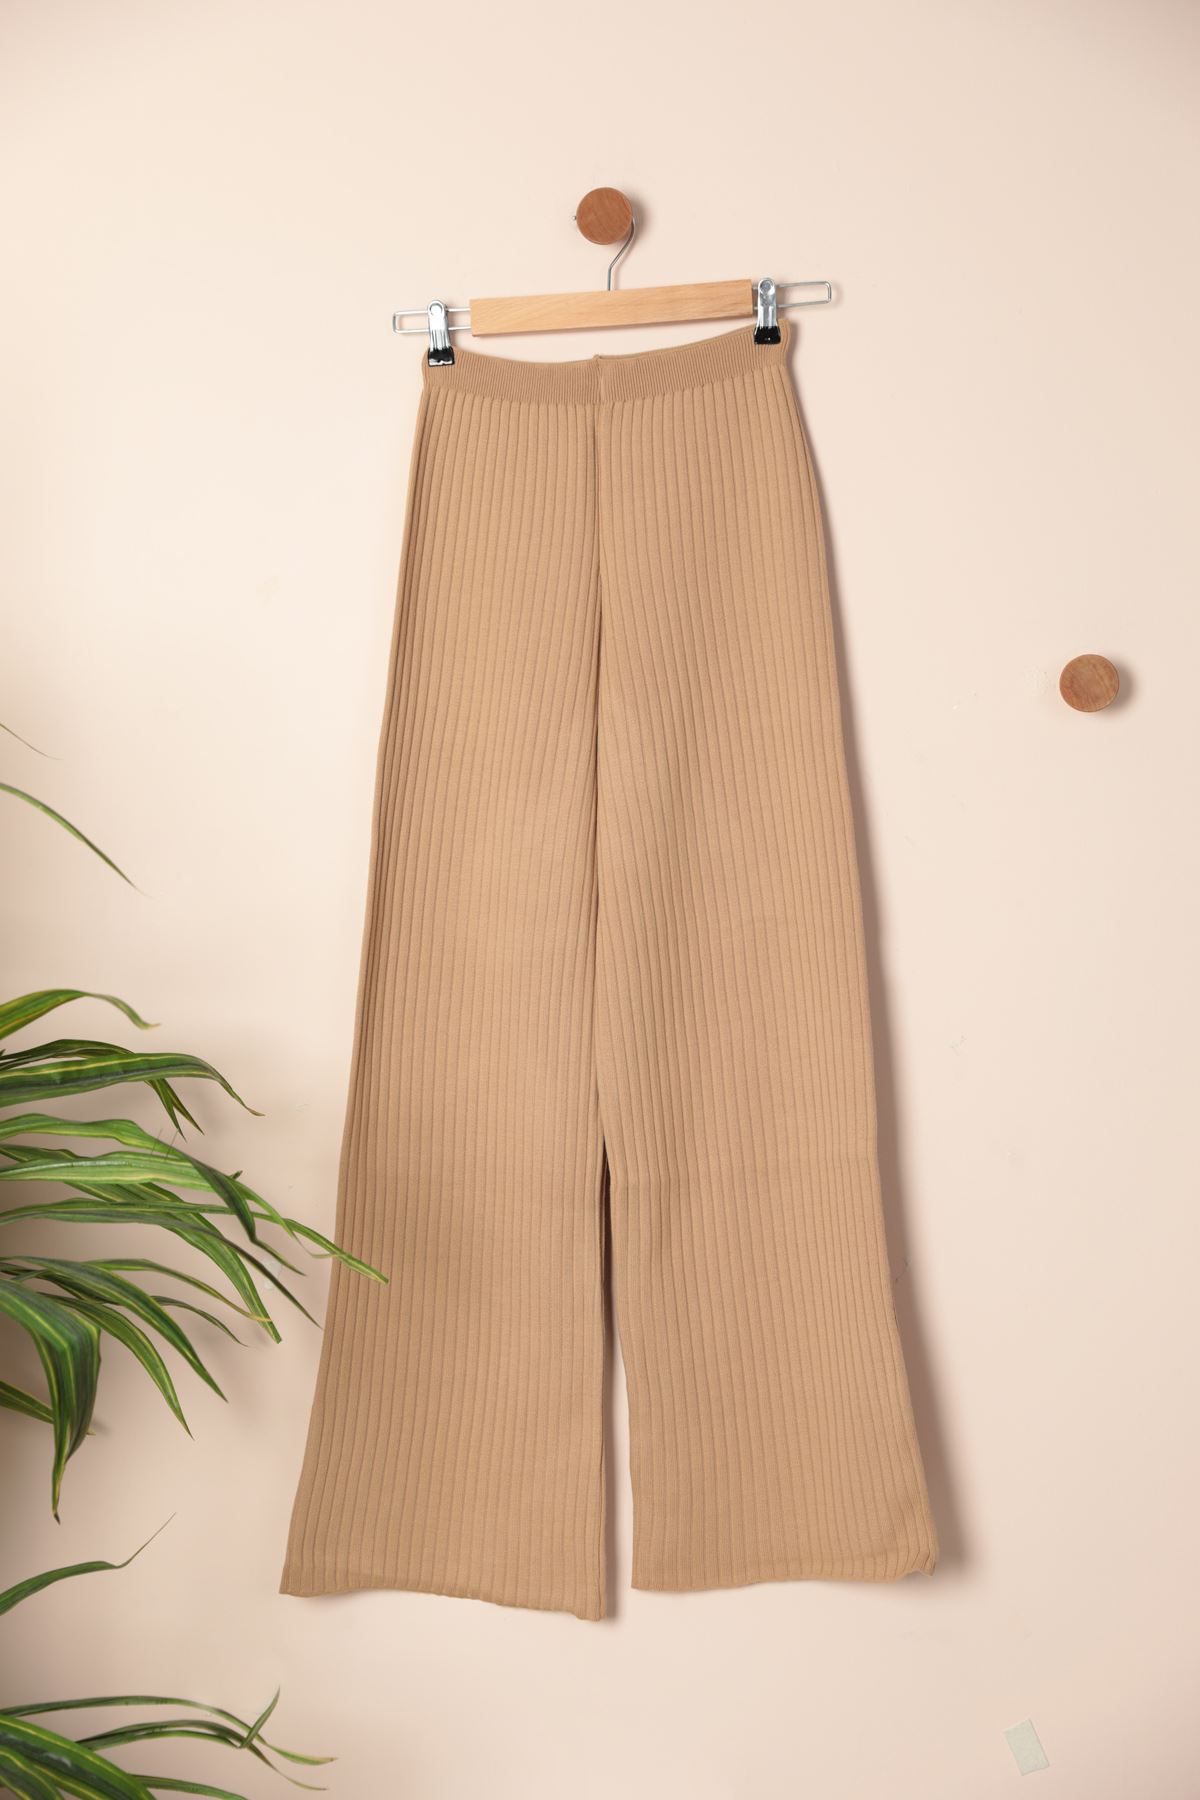 A model wears KAM11555 - Women's Knitwear Corduroy Trousers - Beige, wholesale Pants of Kaktus Moda to display at Lonca